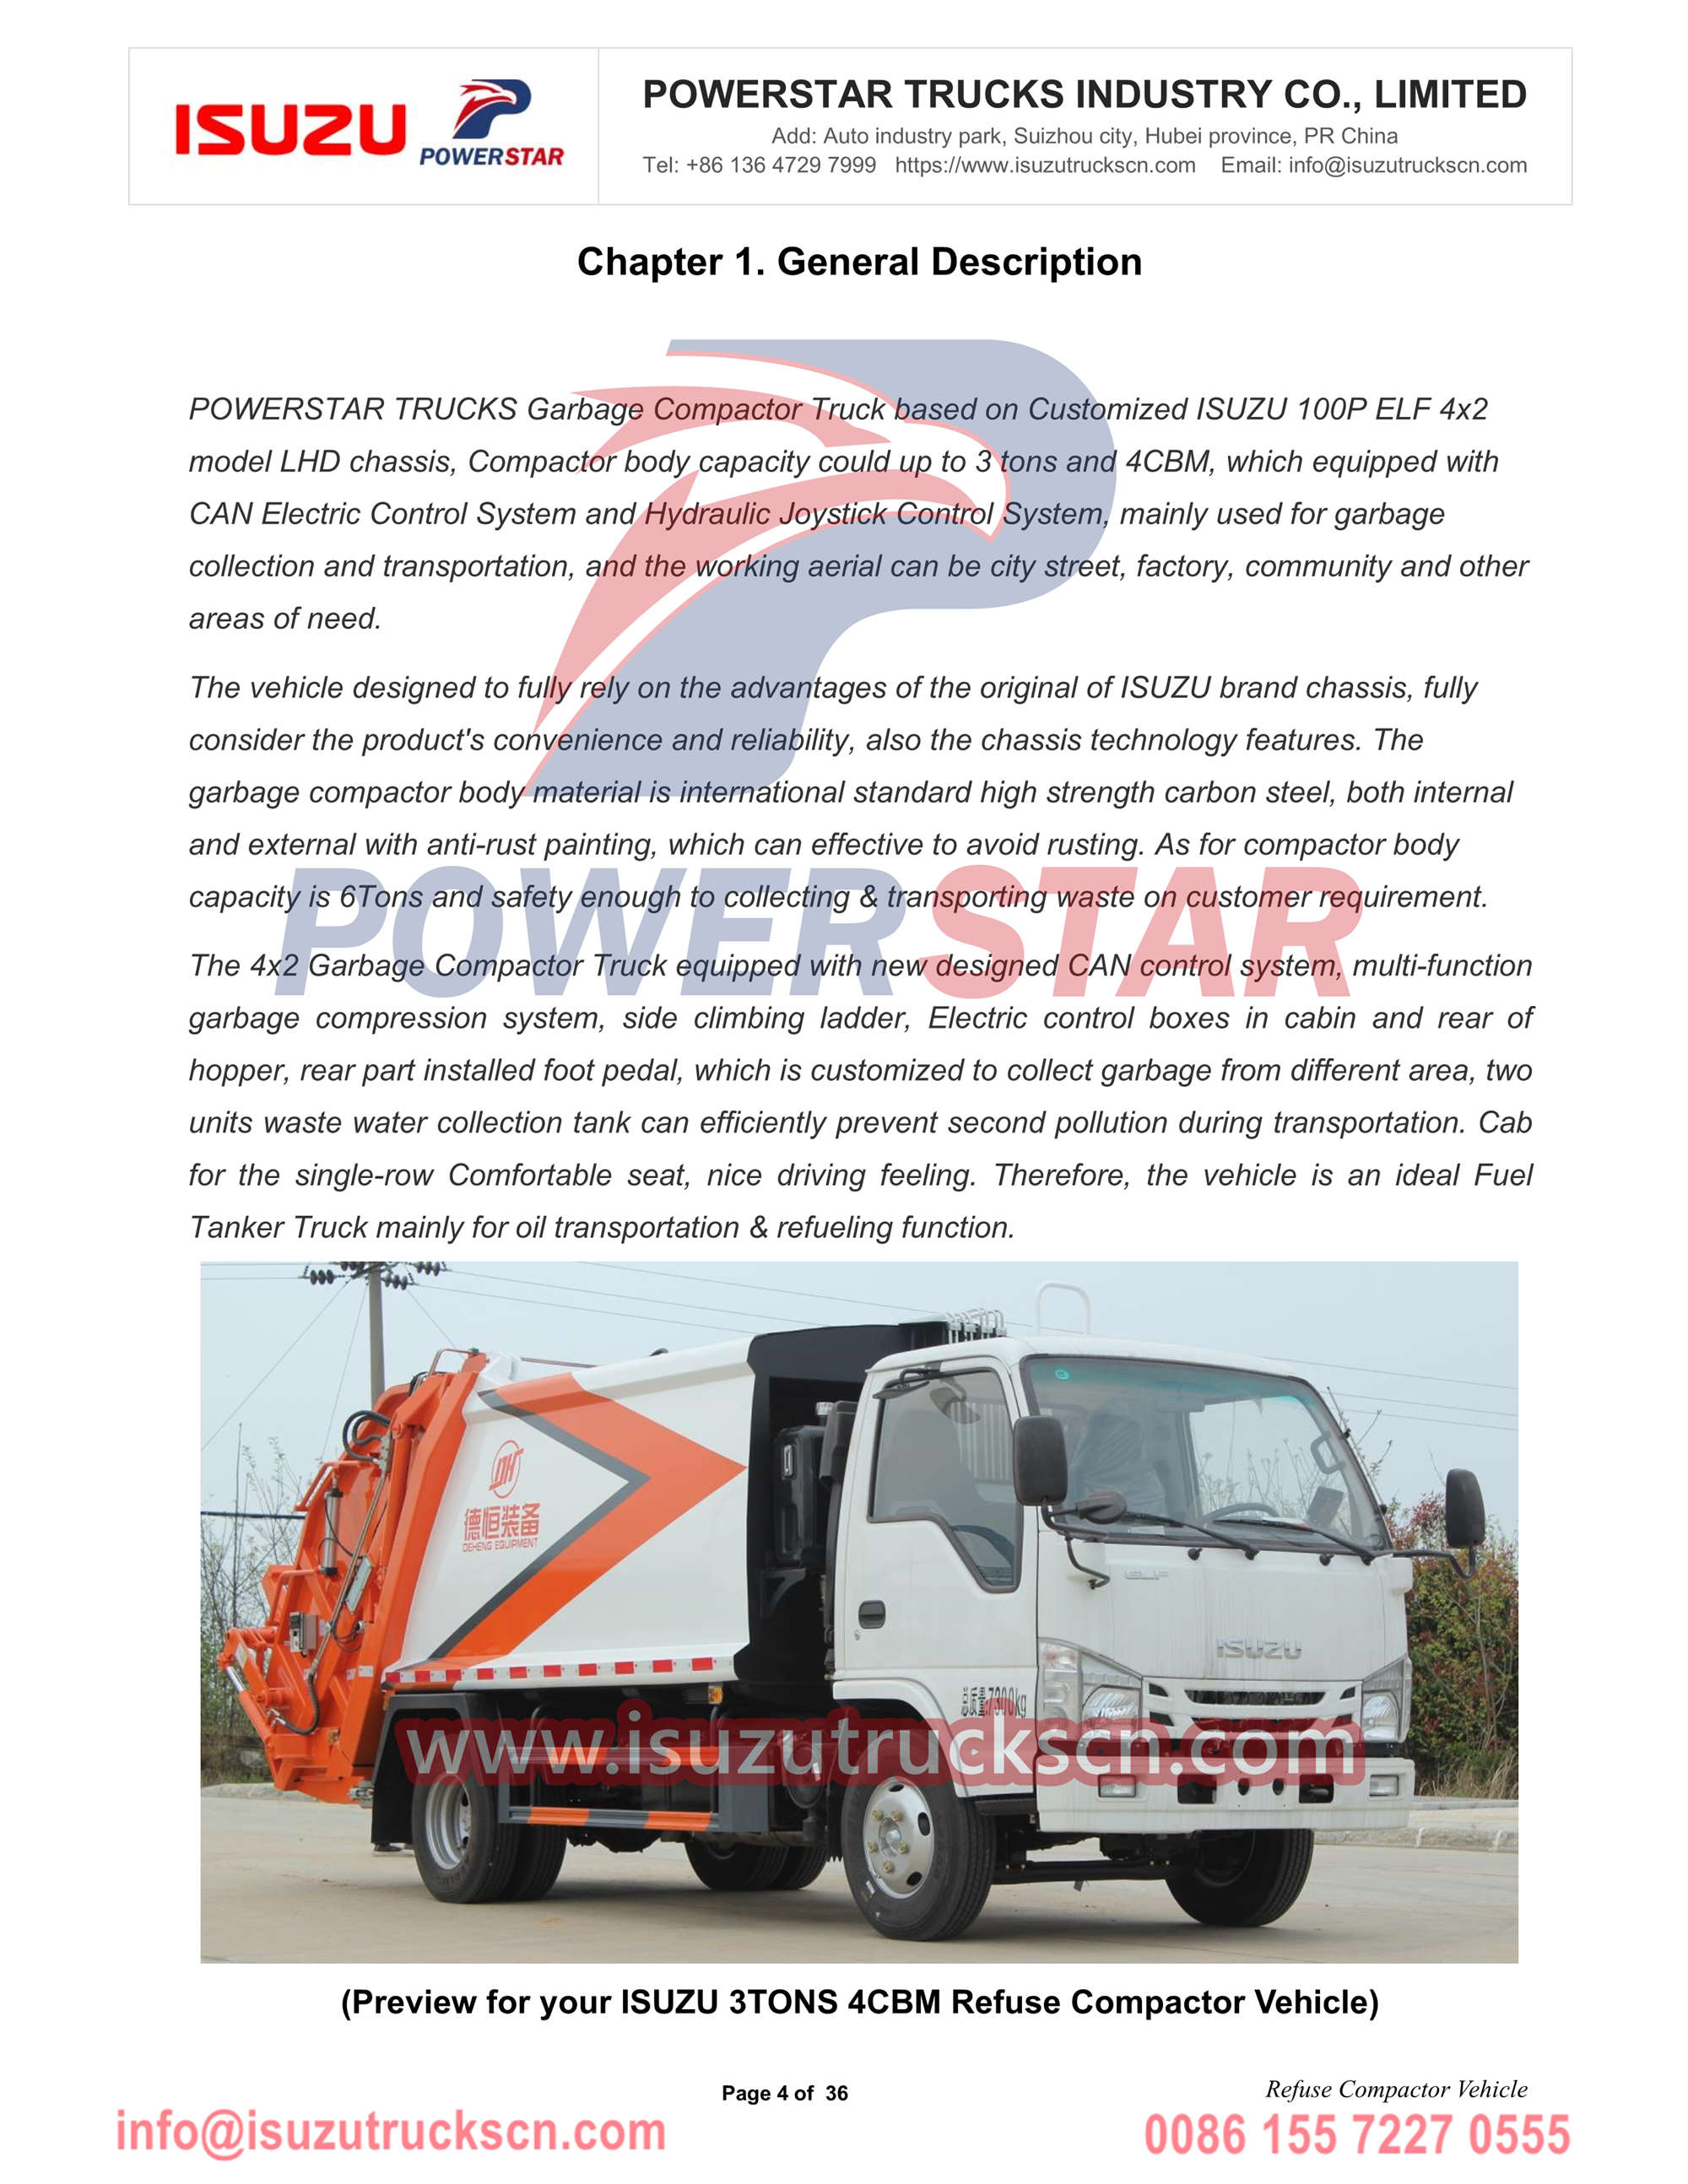 POWERSTAR Isuzu 4cbm Уплотнитель мусора Автомобиль Ручной экспорт Африка Гамбия